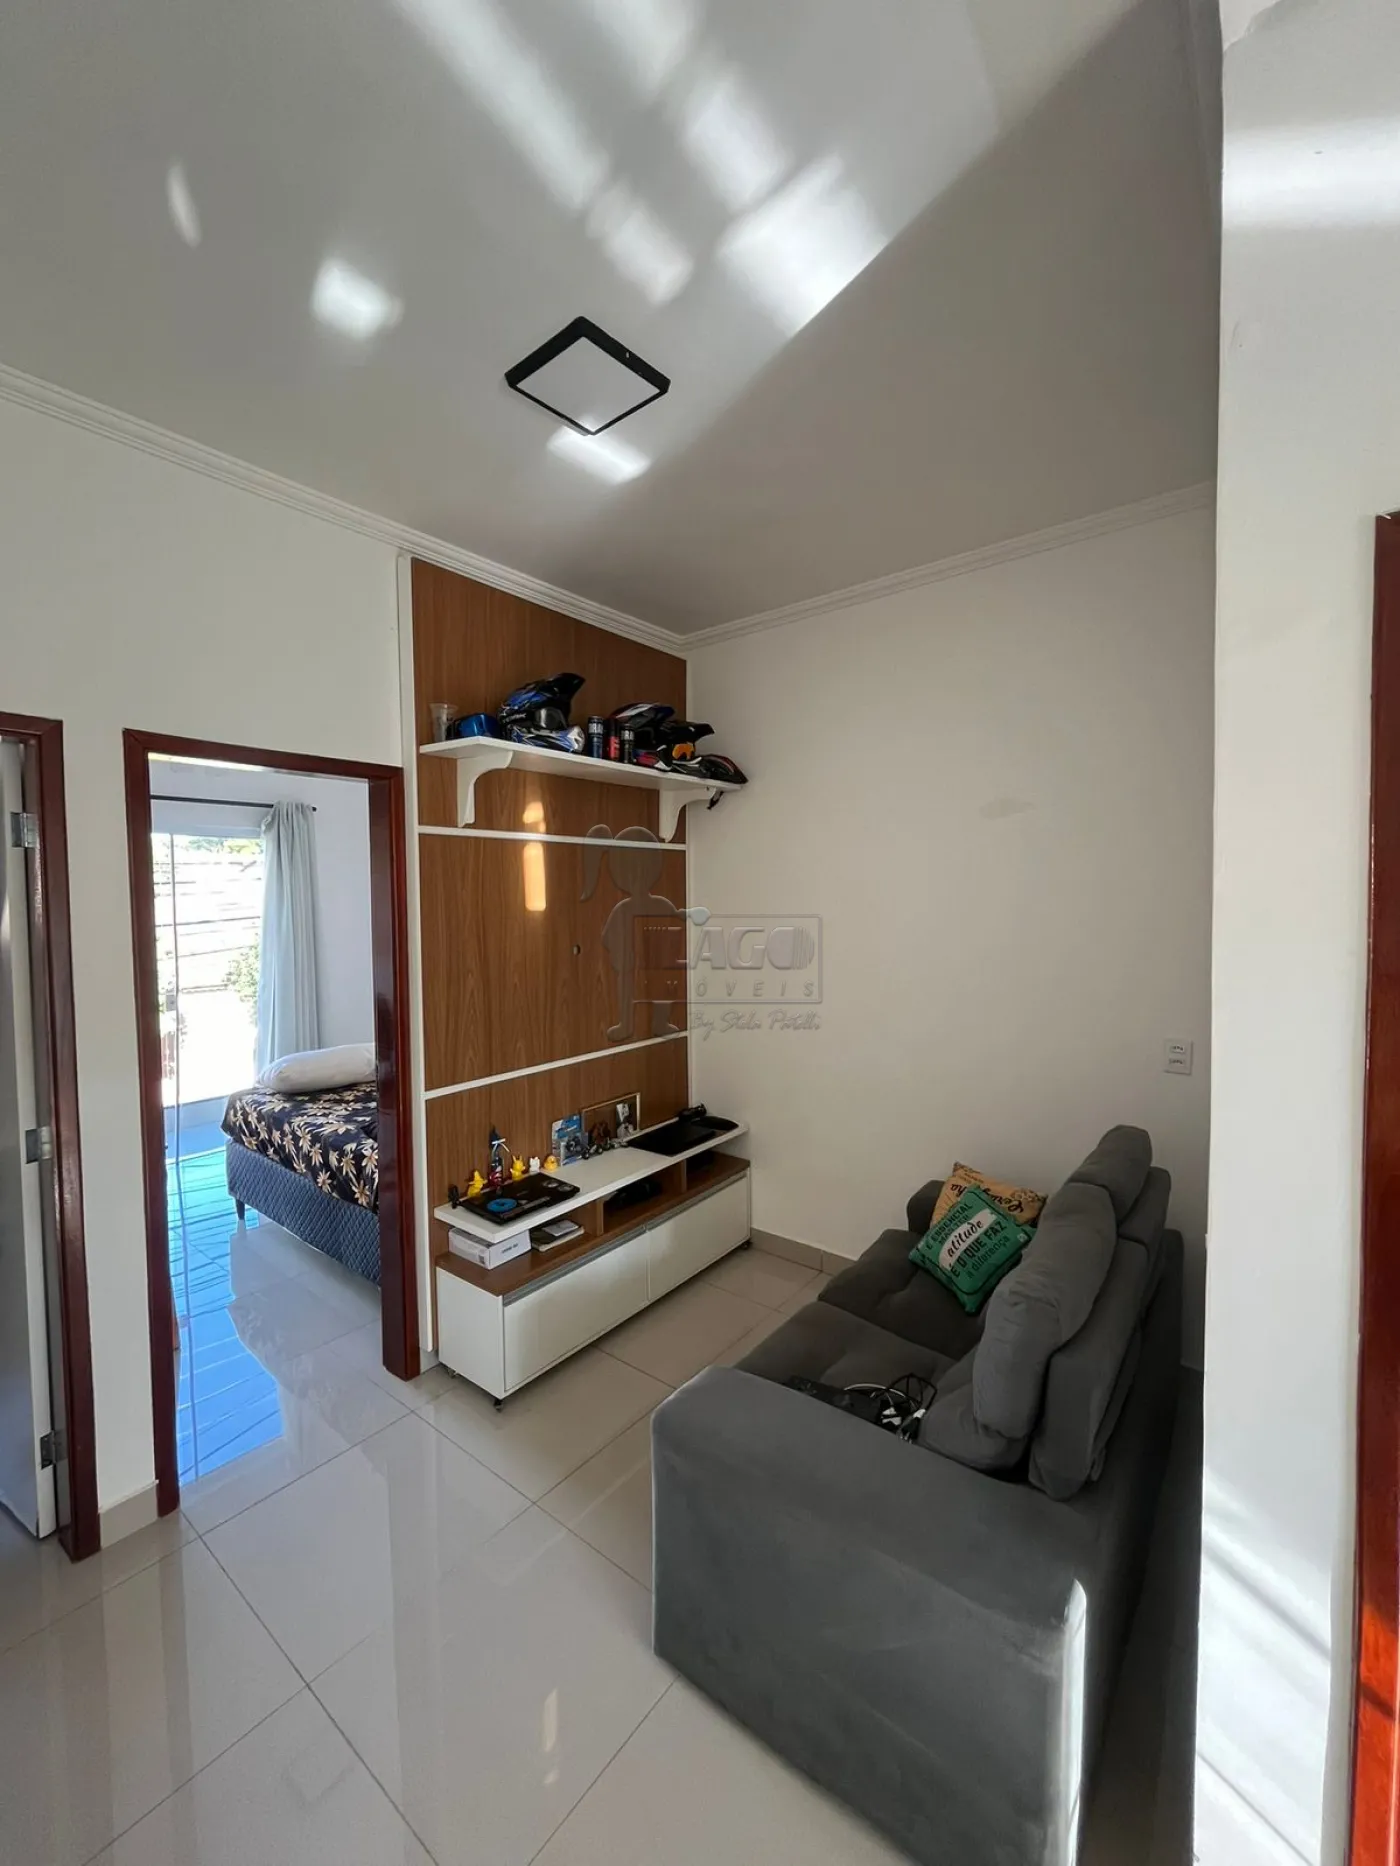 Alugar Casa / Padrão em Ribeirão Preto R$ 2.000,00 - Foto 1